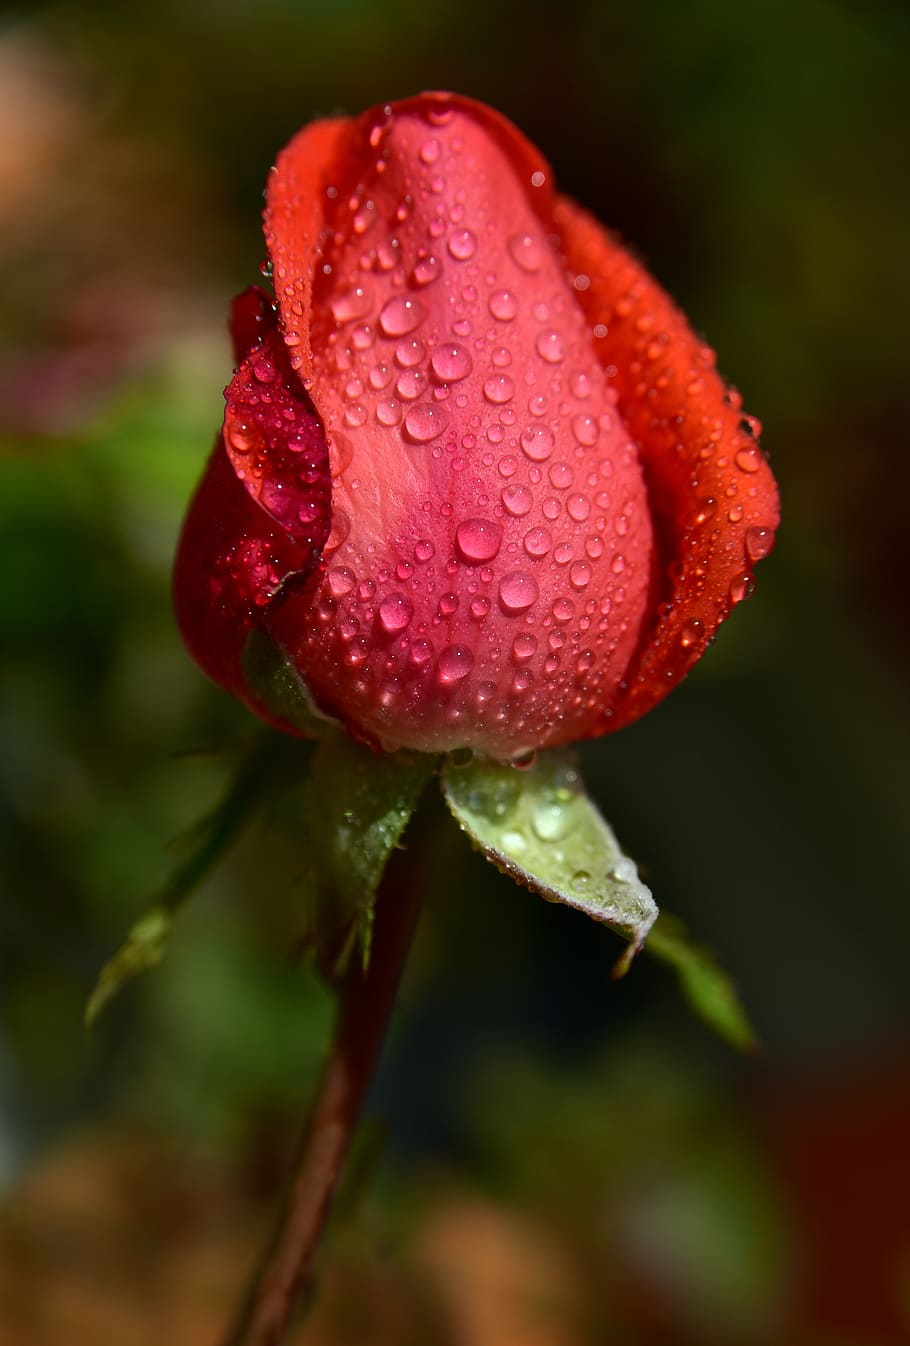 rose, bud, rosebud, pink, red, flower, tender, closed, dew, rain